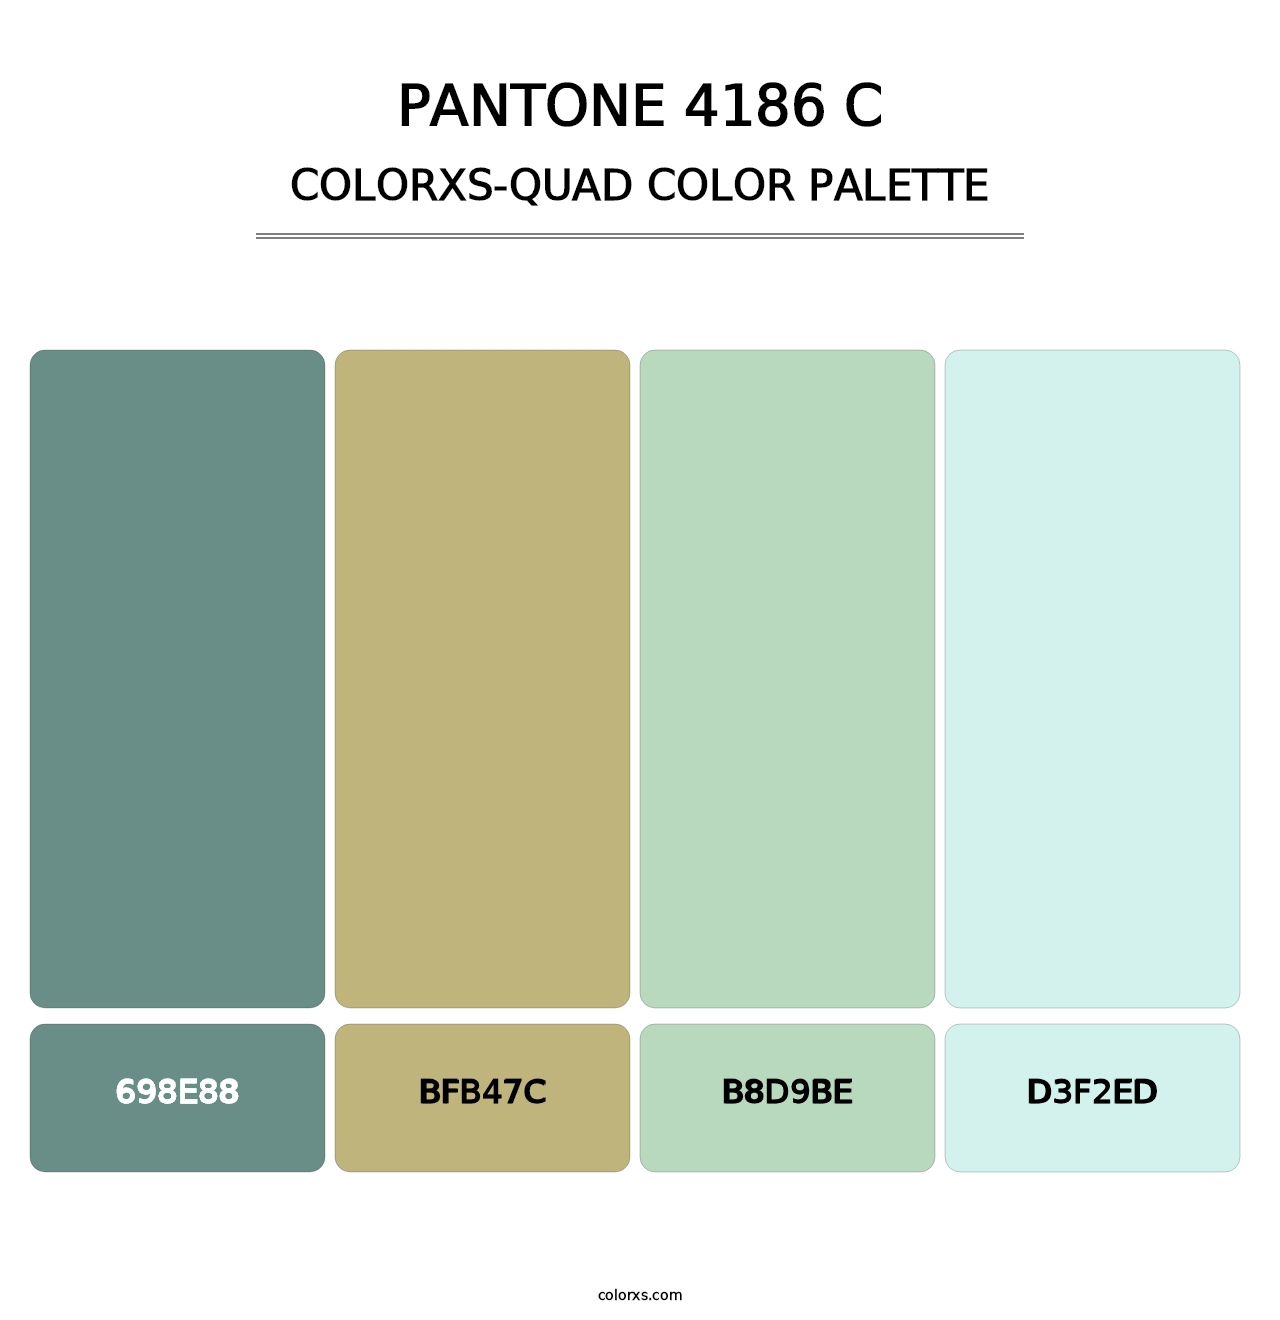 PANTONE 4186 C - Colorxs Quad Palette